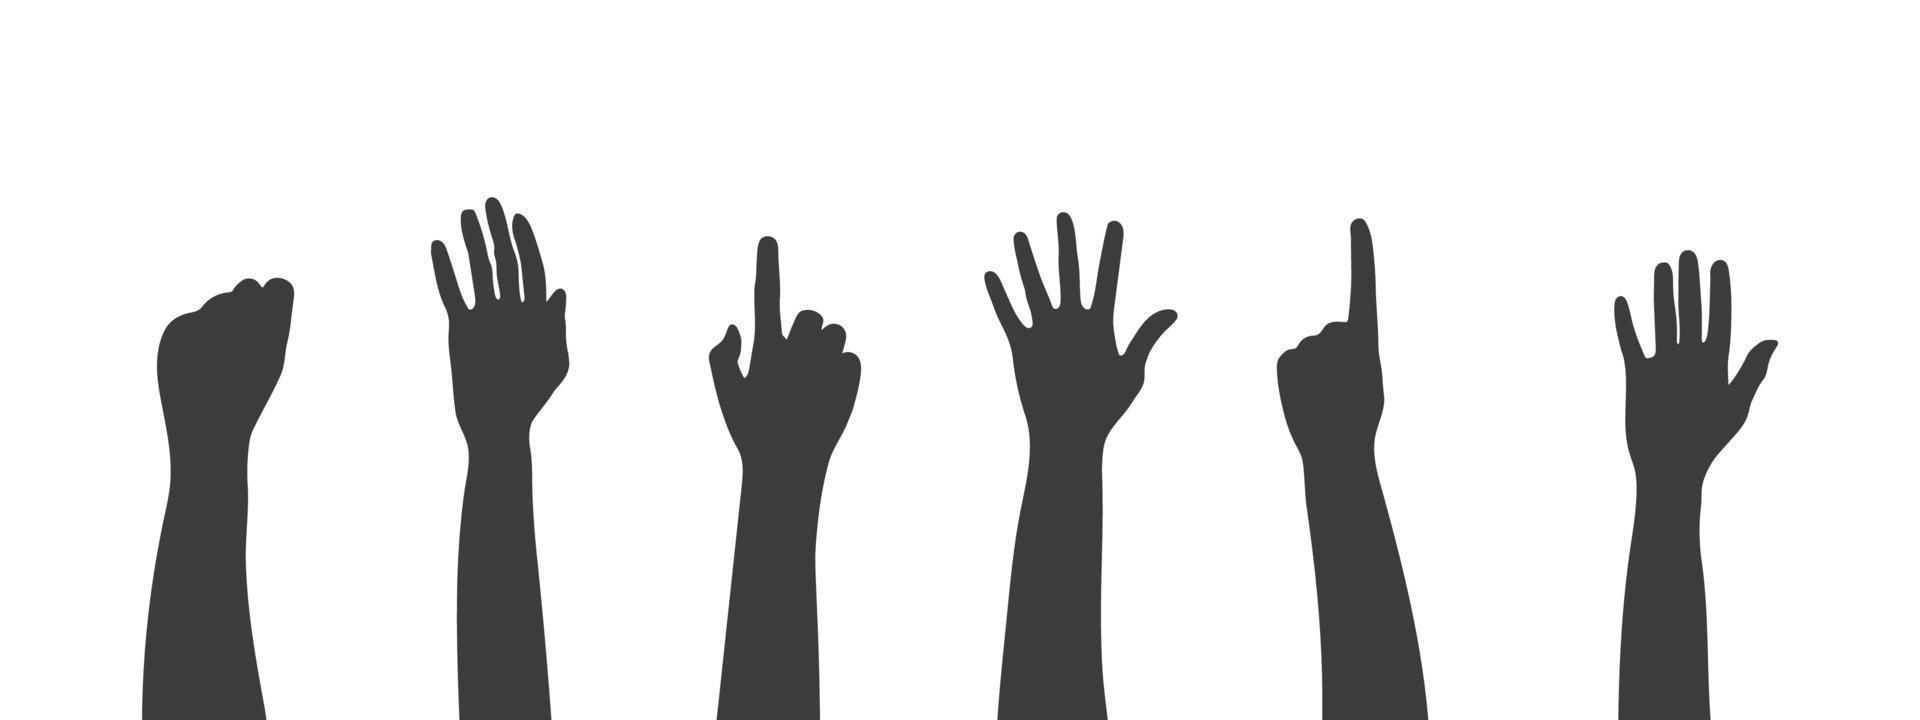 manos de diferentes siluetas. manos humanas negras. brazos y manos en alto. ilustración vectorial vector